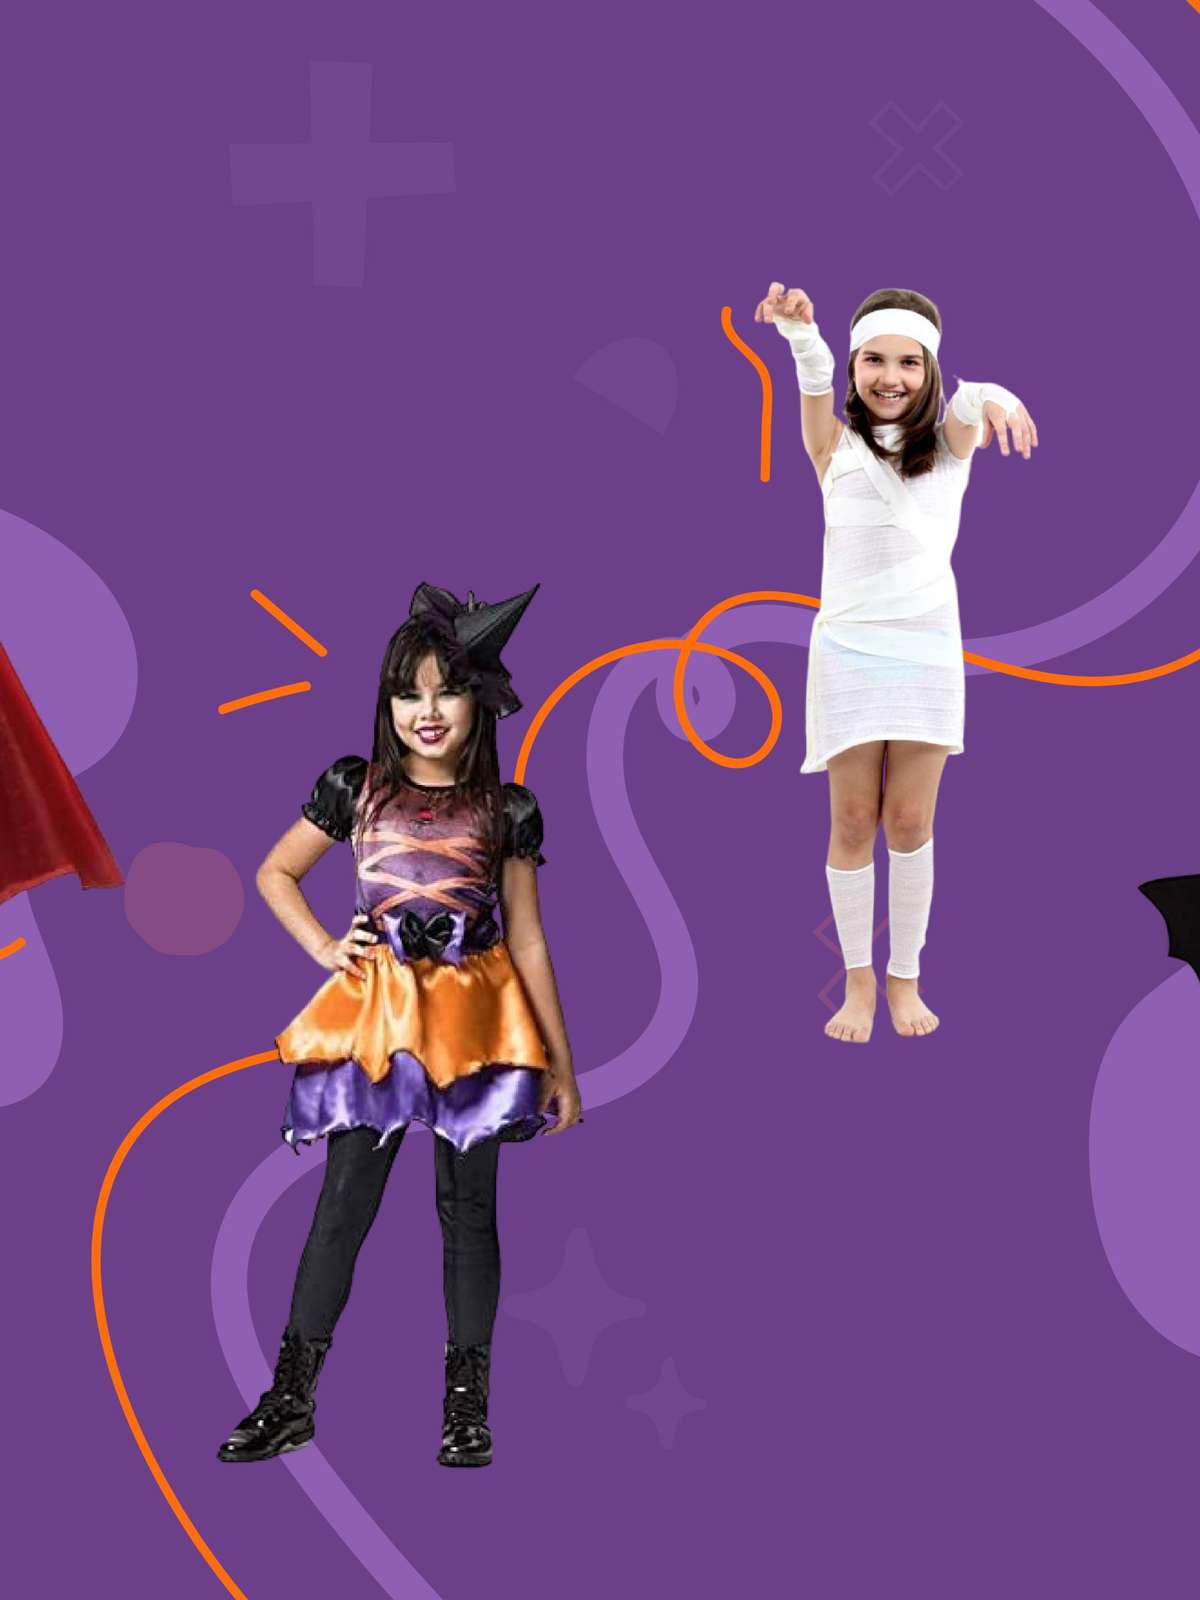 10 inspirações de fantasias de Halloween para a família